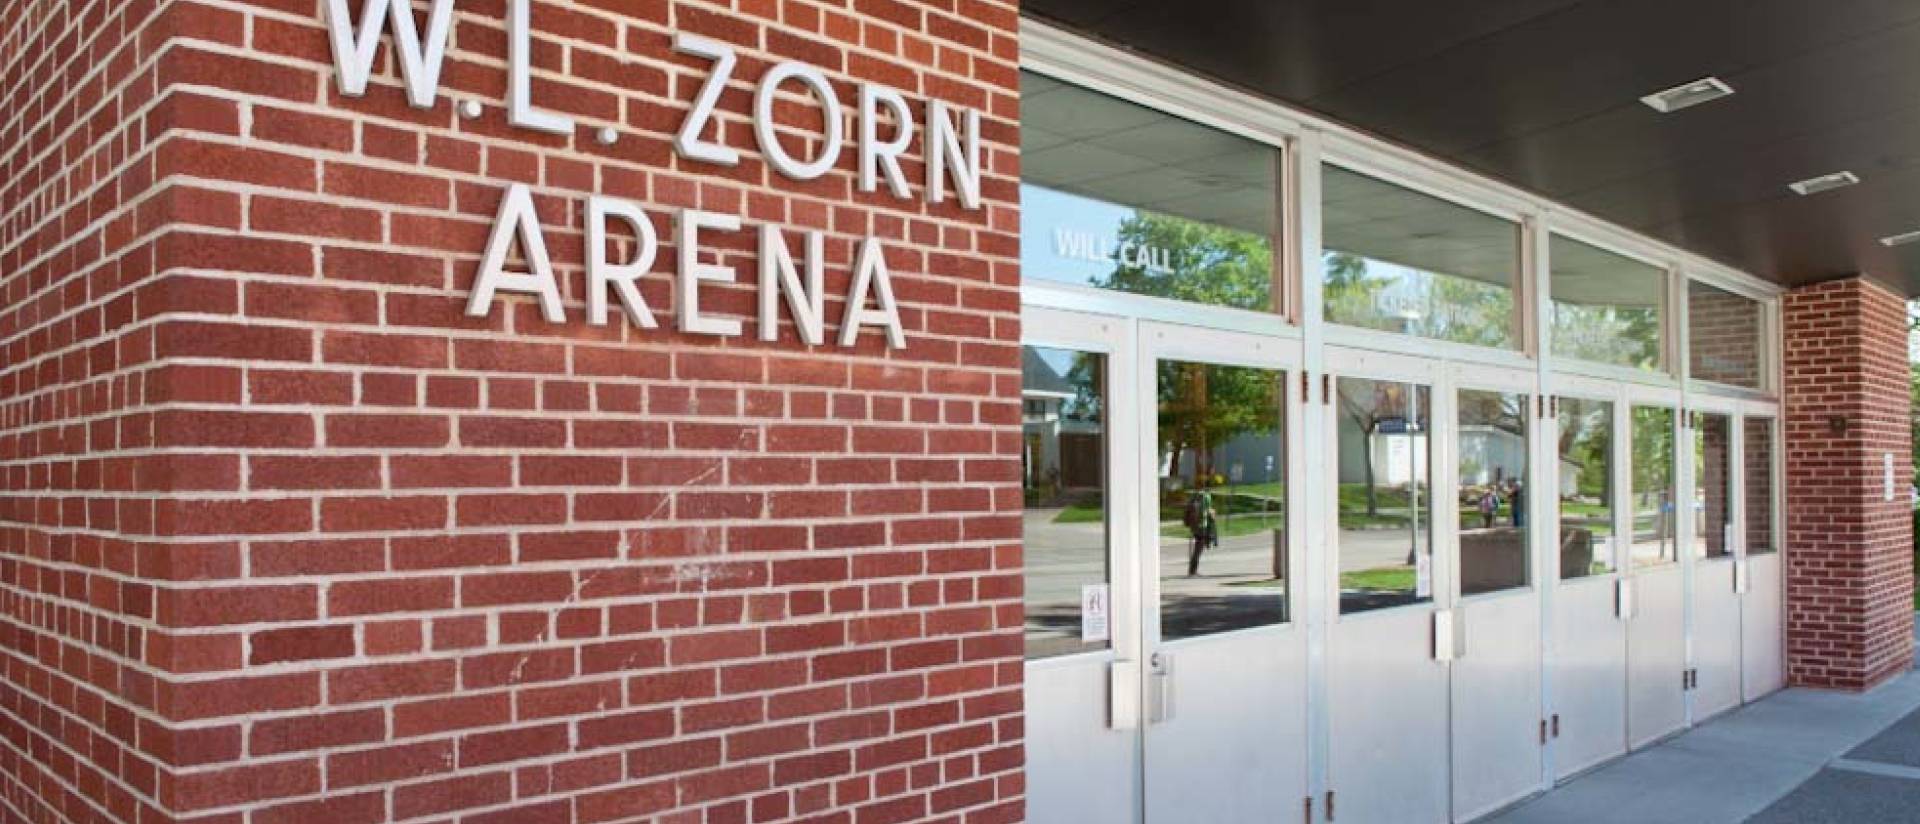 Zorn Arena entryway